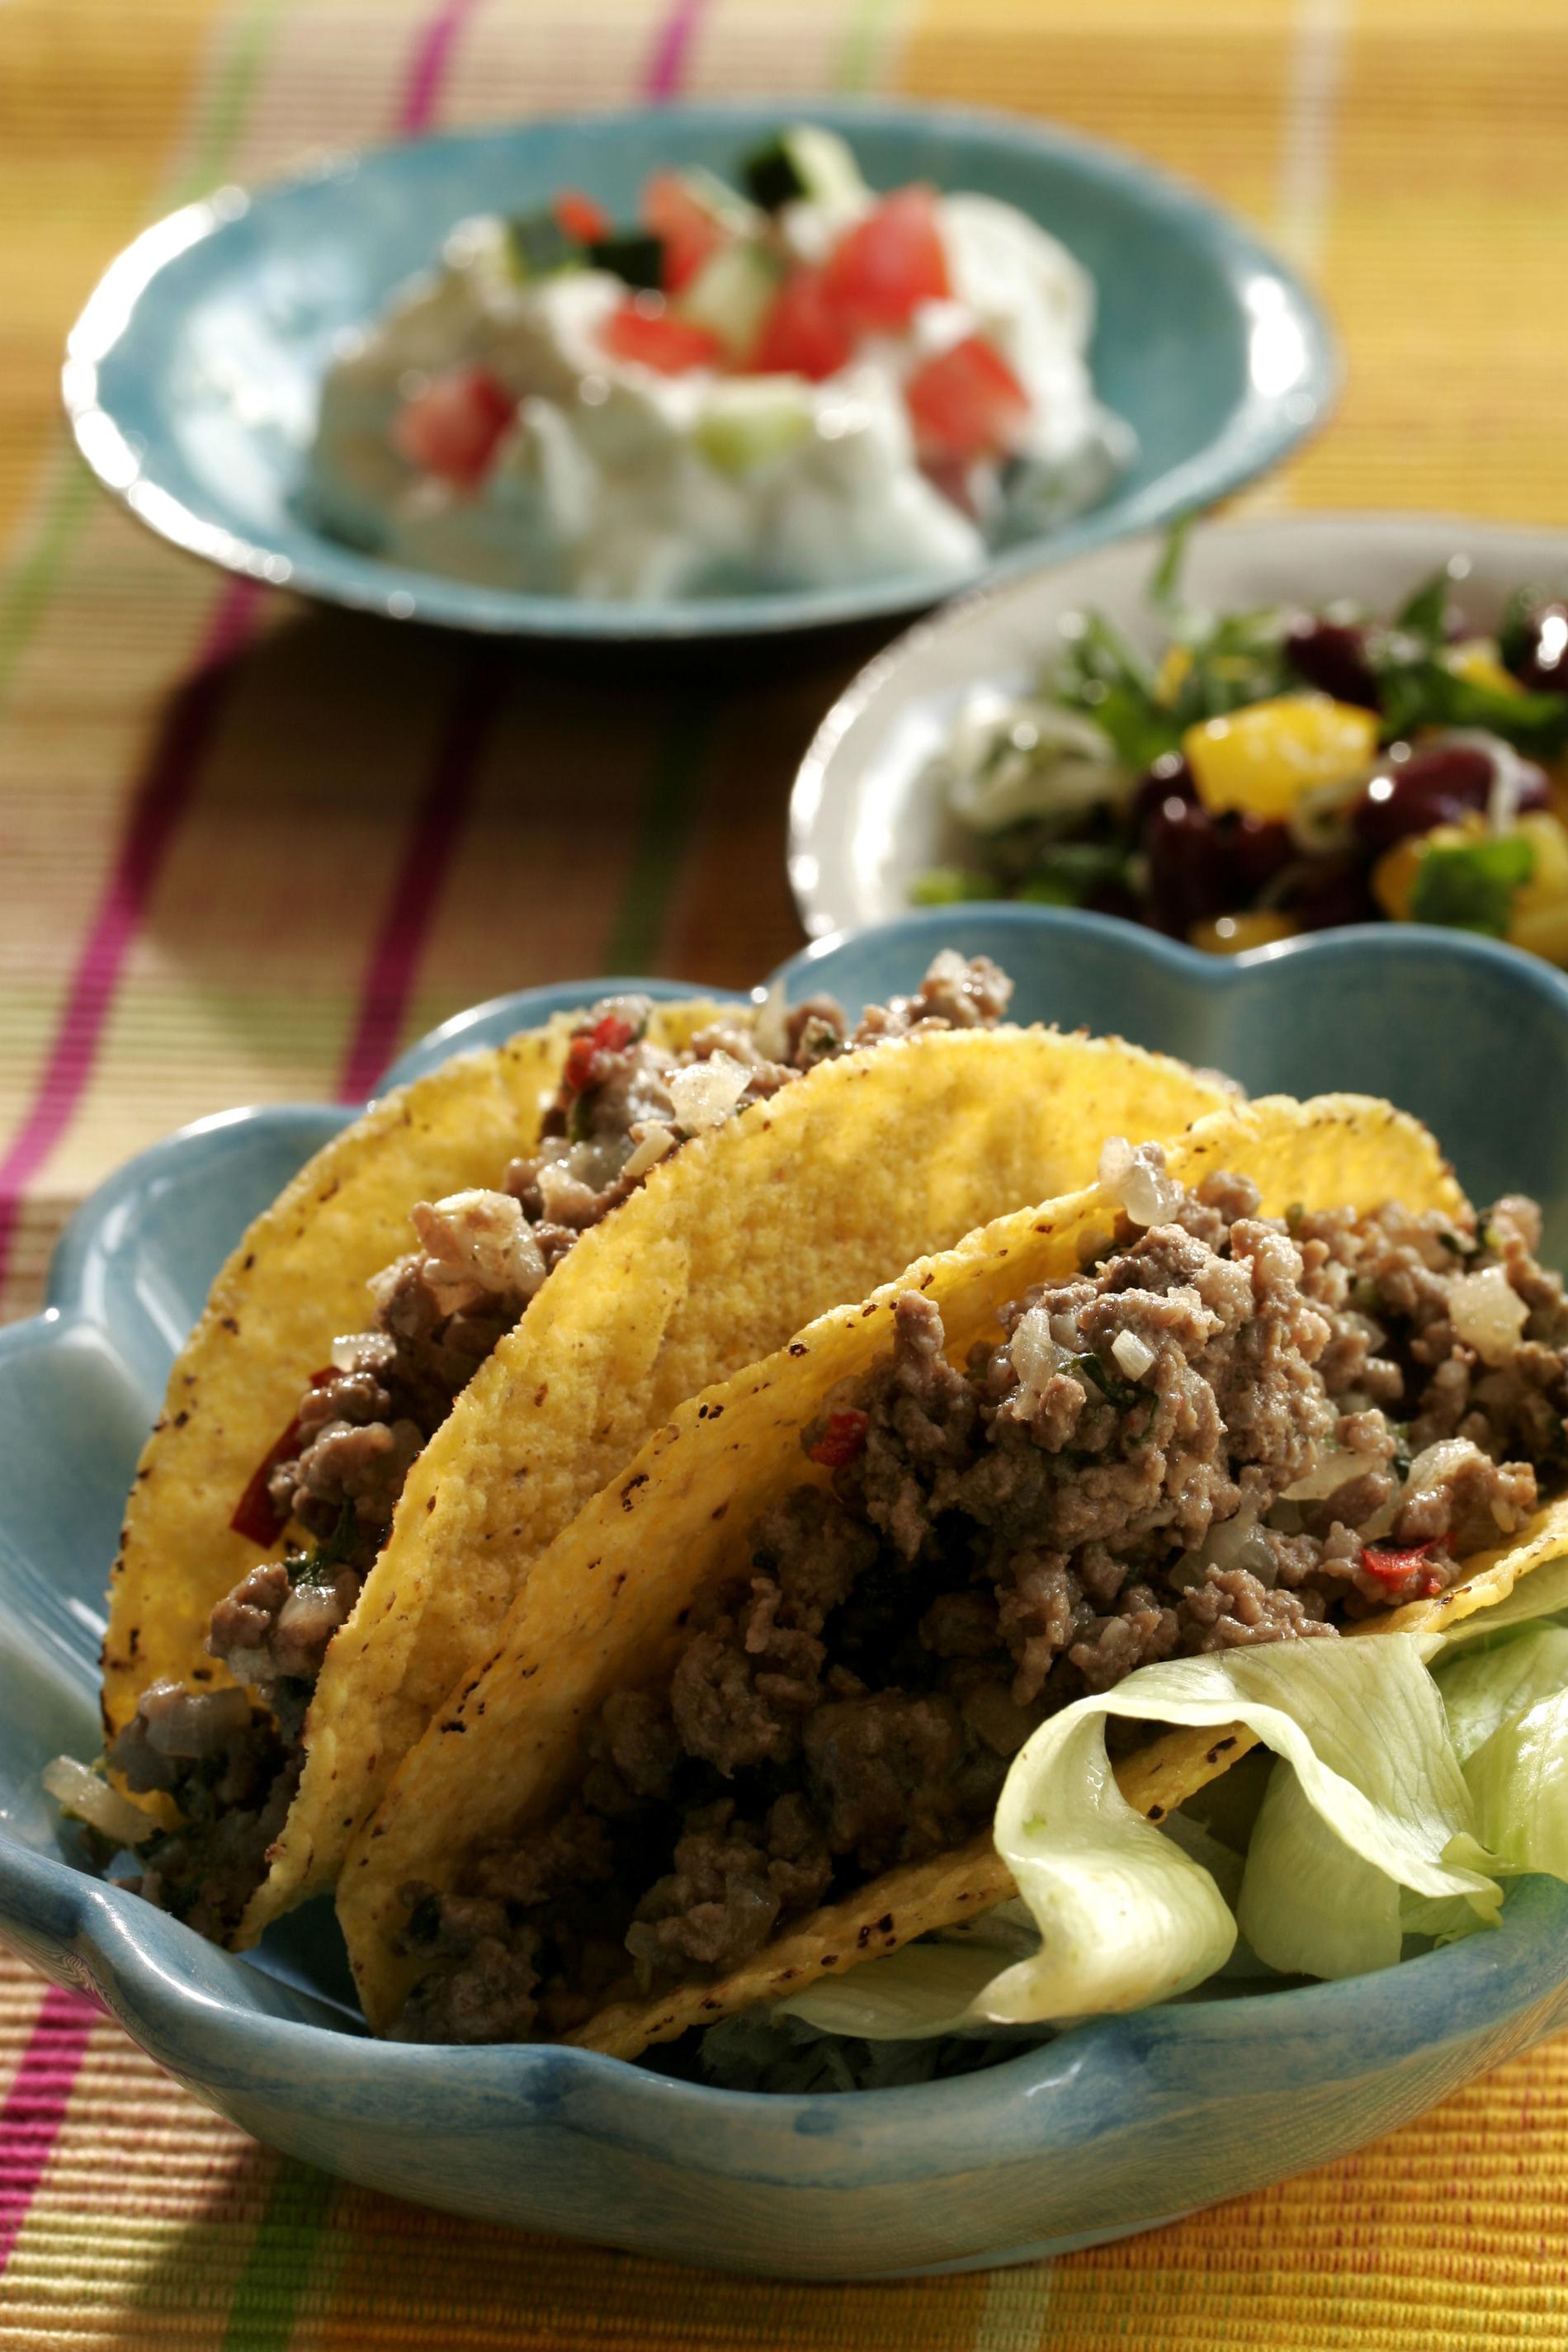 Blir det tacos till middag i helgen? Vincent Arrhenius tipsar om sina favoritviner till tacos-myset.